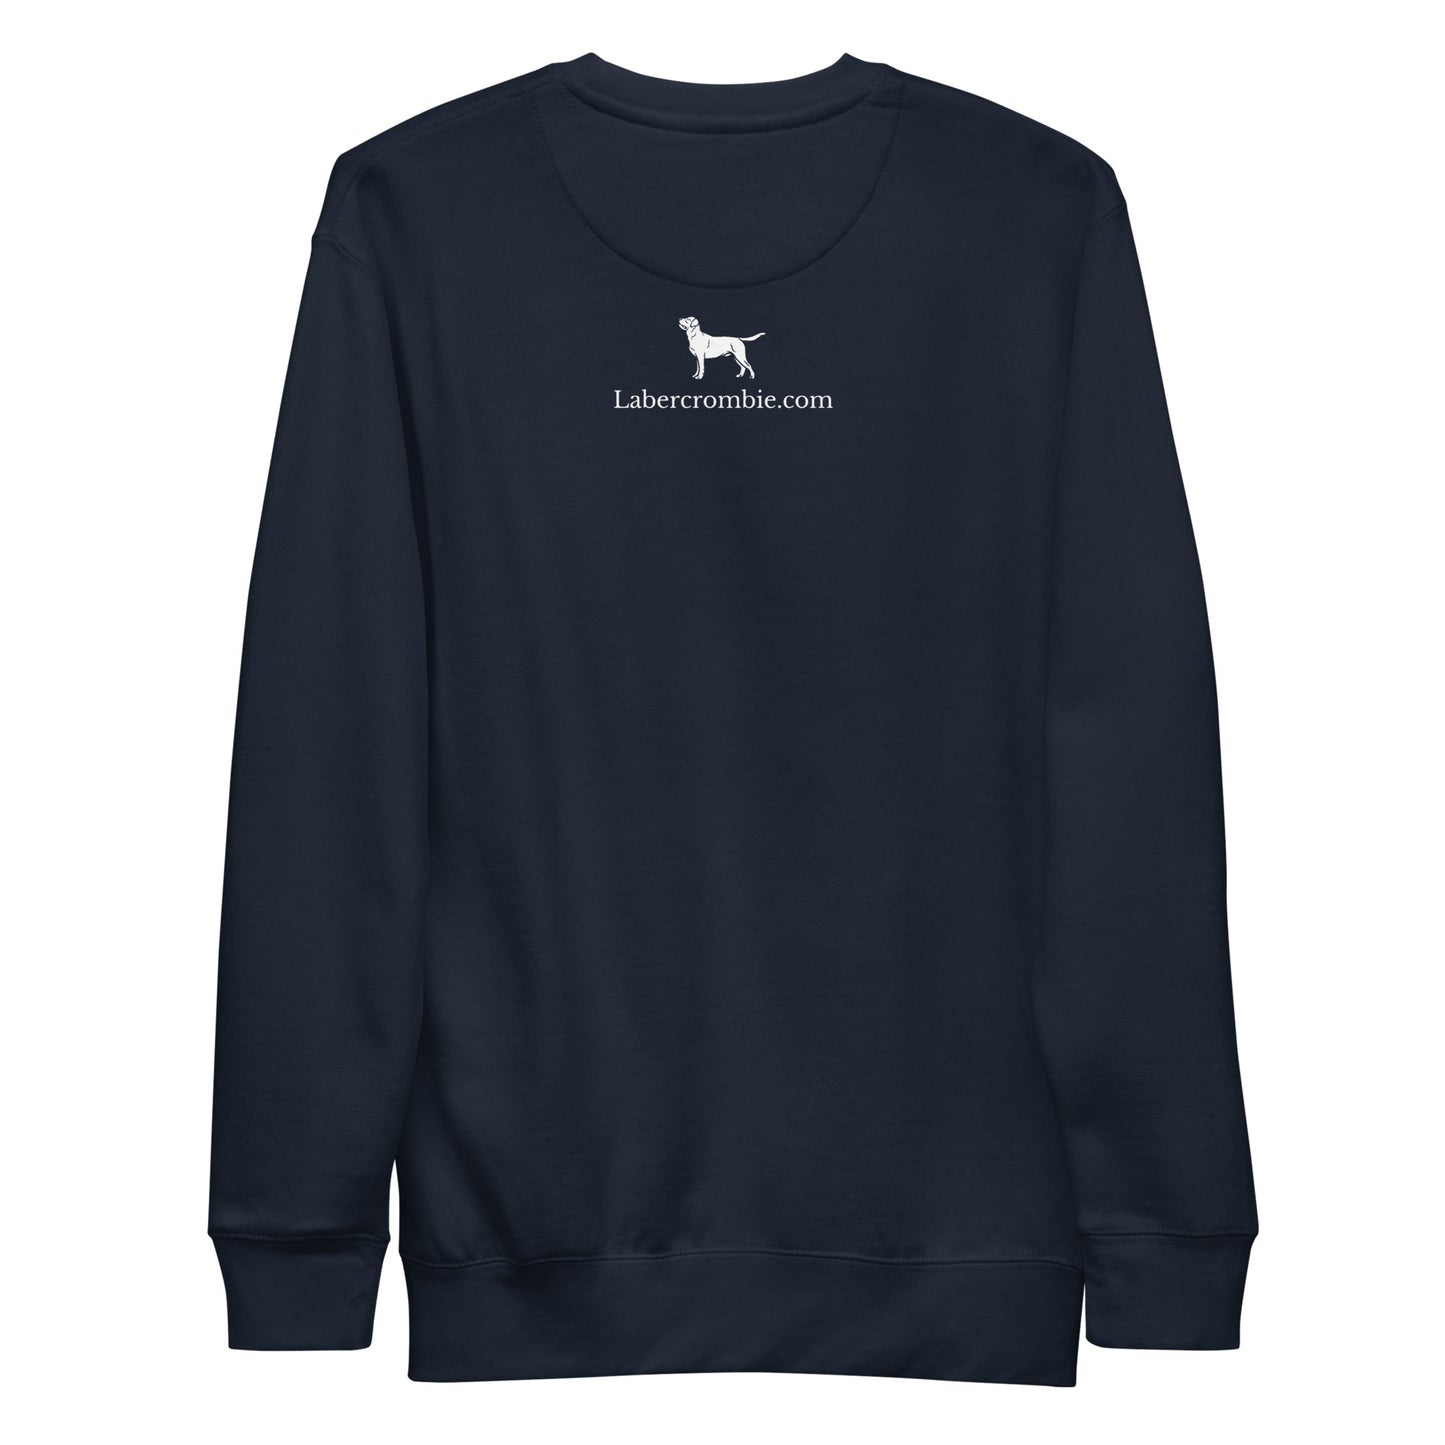 Prescott Lamb 24 Unisex Premium Sweatshirt